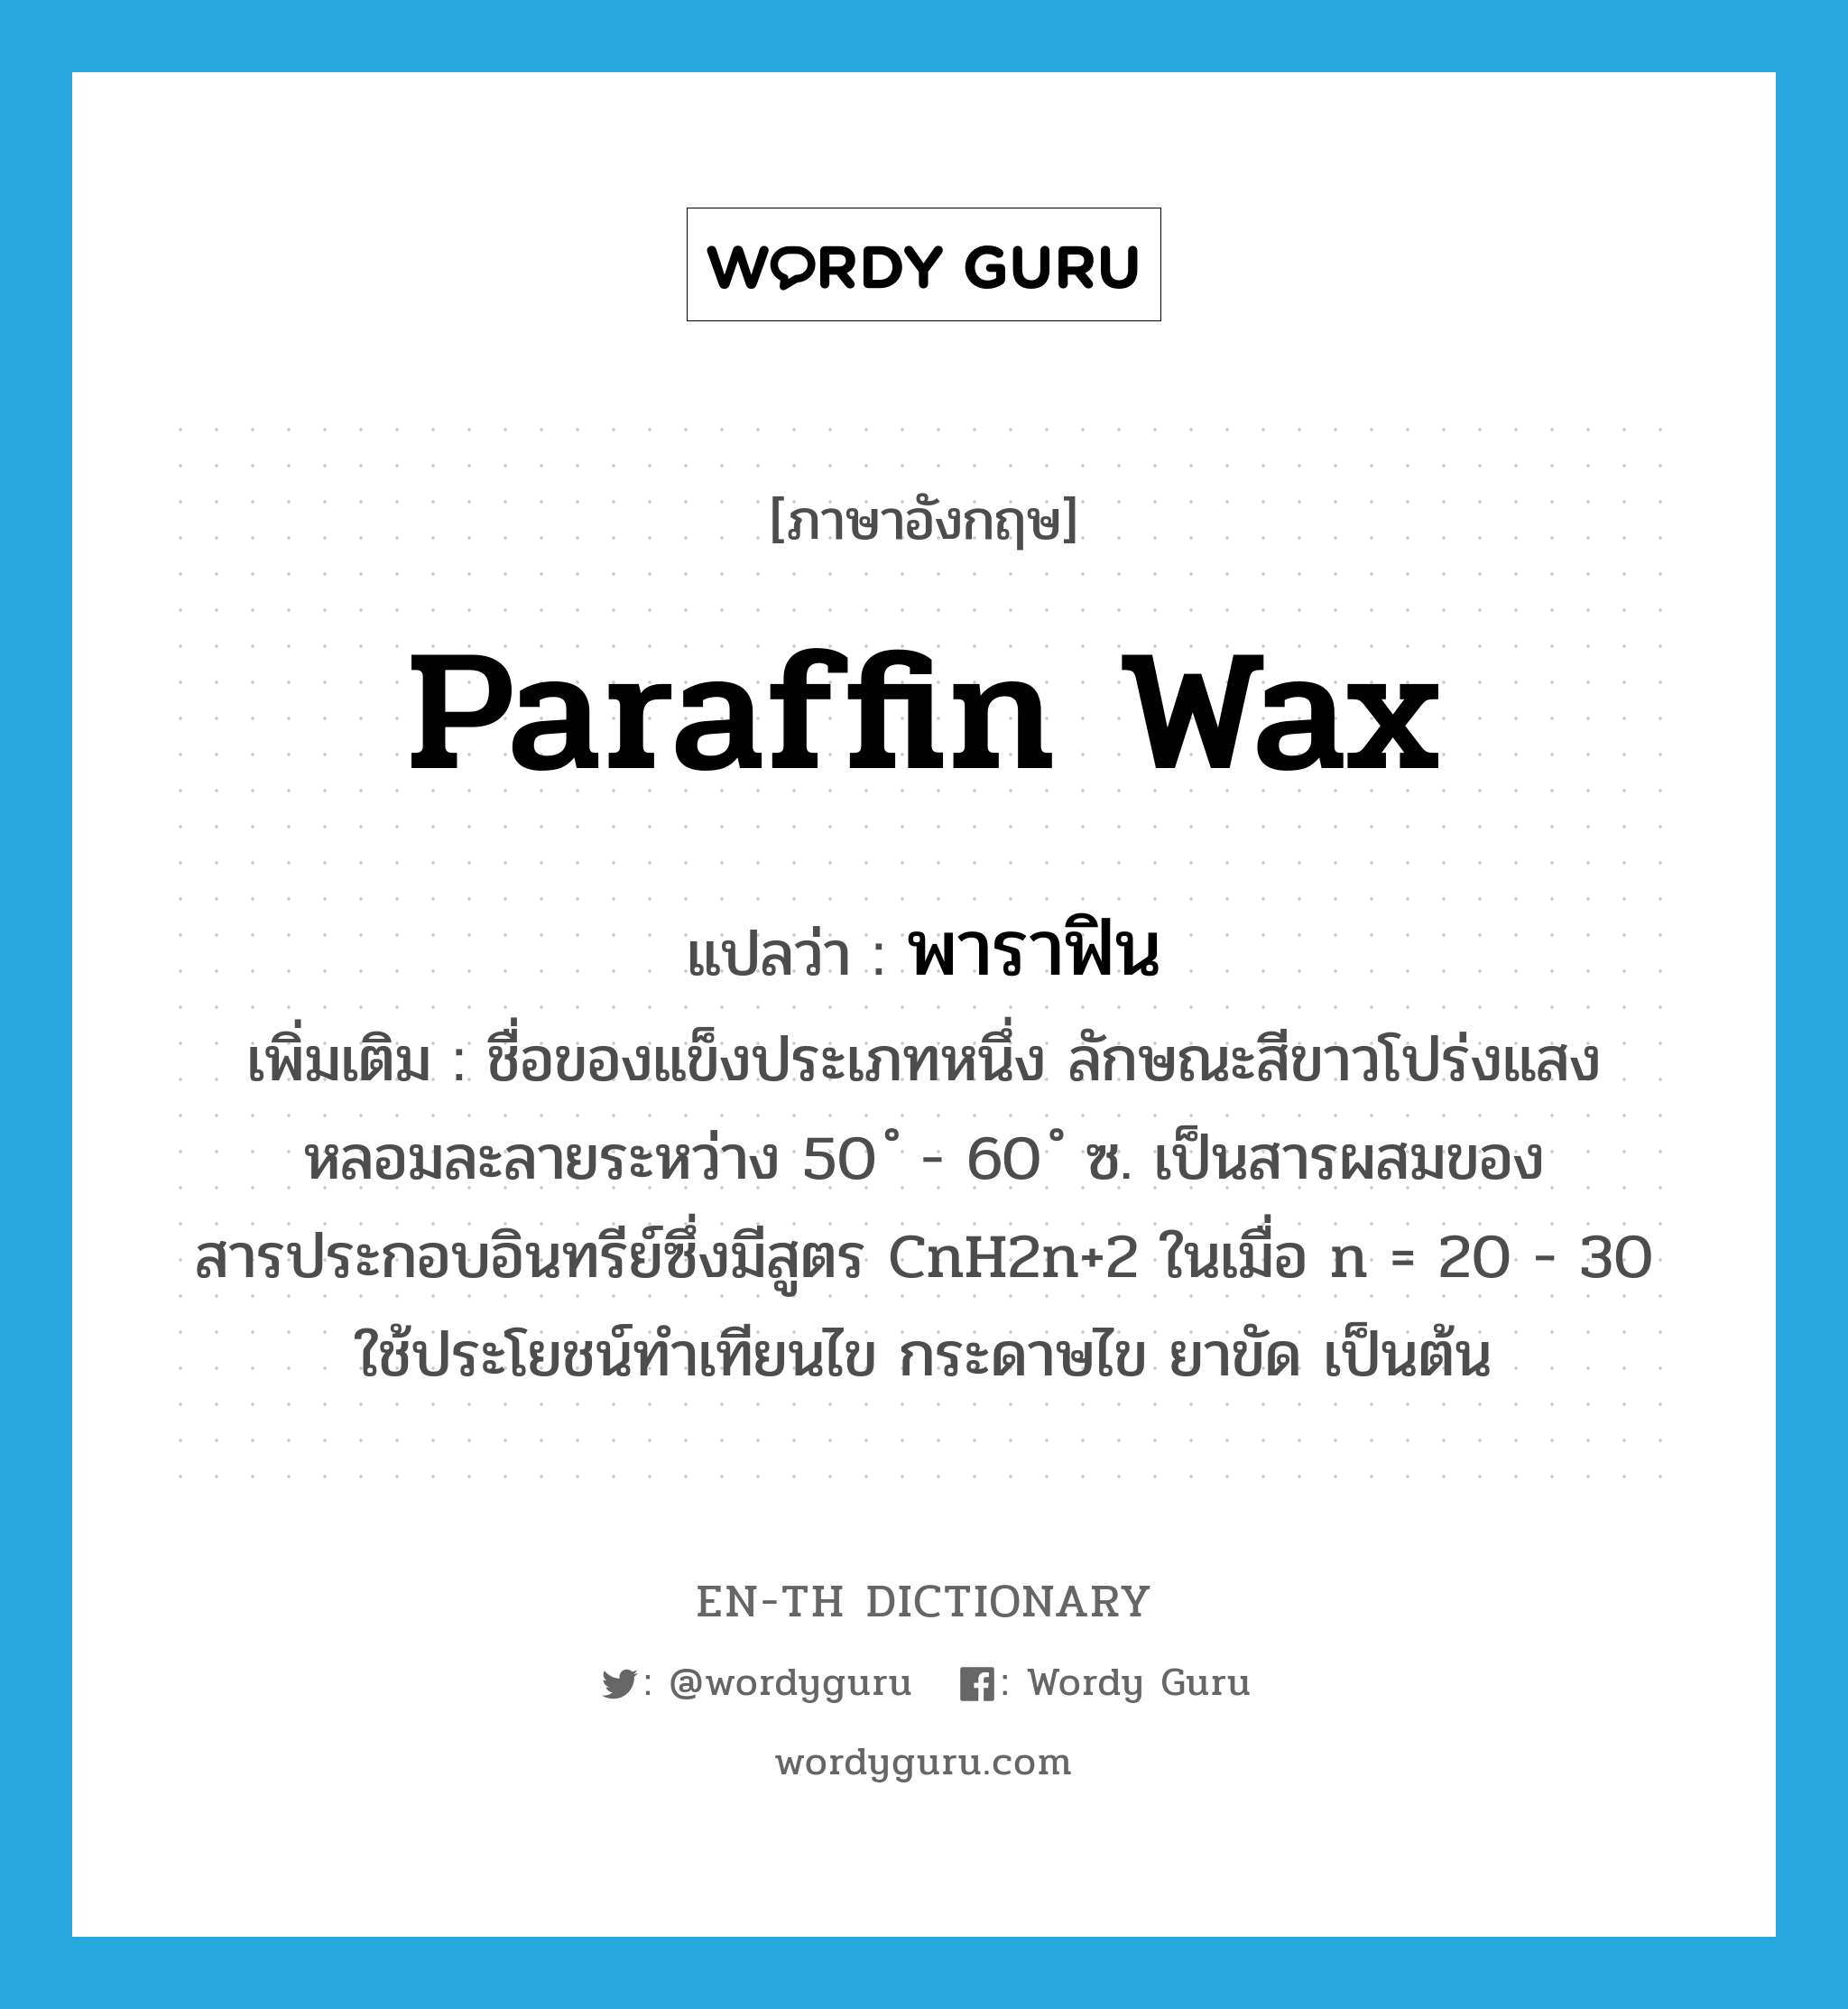 paraffin wax แปลว่า?, คำศัพท์ภาษาอังกฤษ paraffin wax แปลว่า พาราฟิน ประเภท N เพิ่มเติม ชื่อของแข็งประเภทหนึ่ง ลักษณะสีขาวโปร่งแสง หลอมละลายระหว่าง 50 ํ - 60 ํ ซ. เป็นสารผสมของสารประกอบอินทรีย์ซึ่งมีสูตร CnH2n+2 ในเมื่อ n = 20 - 30 ใช้ประโยชน์ทำเทียนไข กระดาษไข ยาขัด เป็นต้น หมวด N